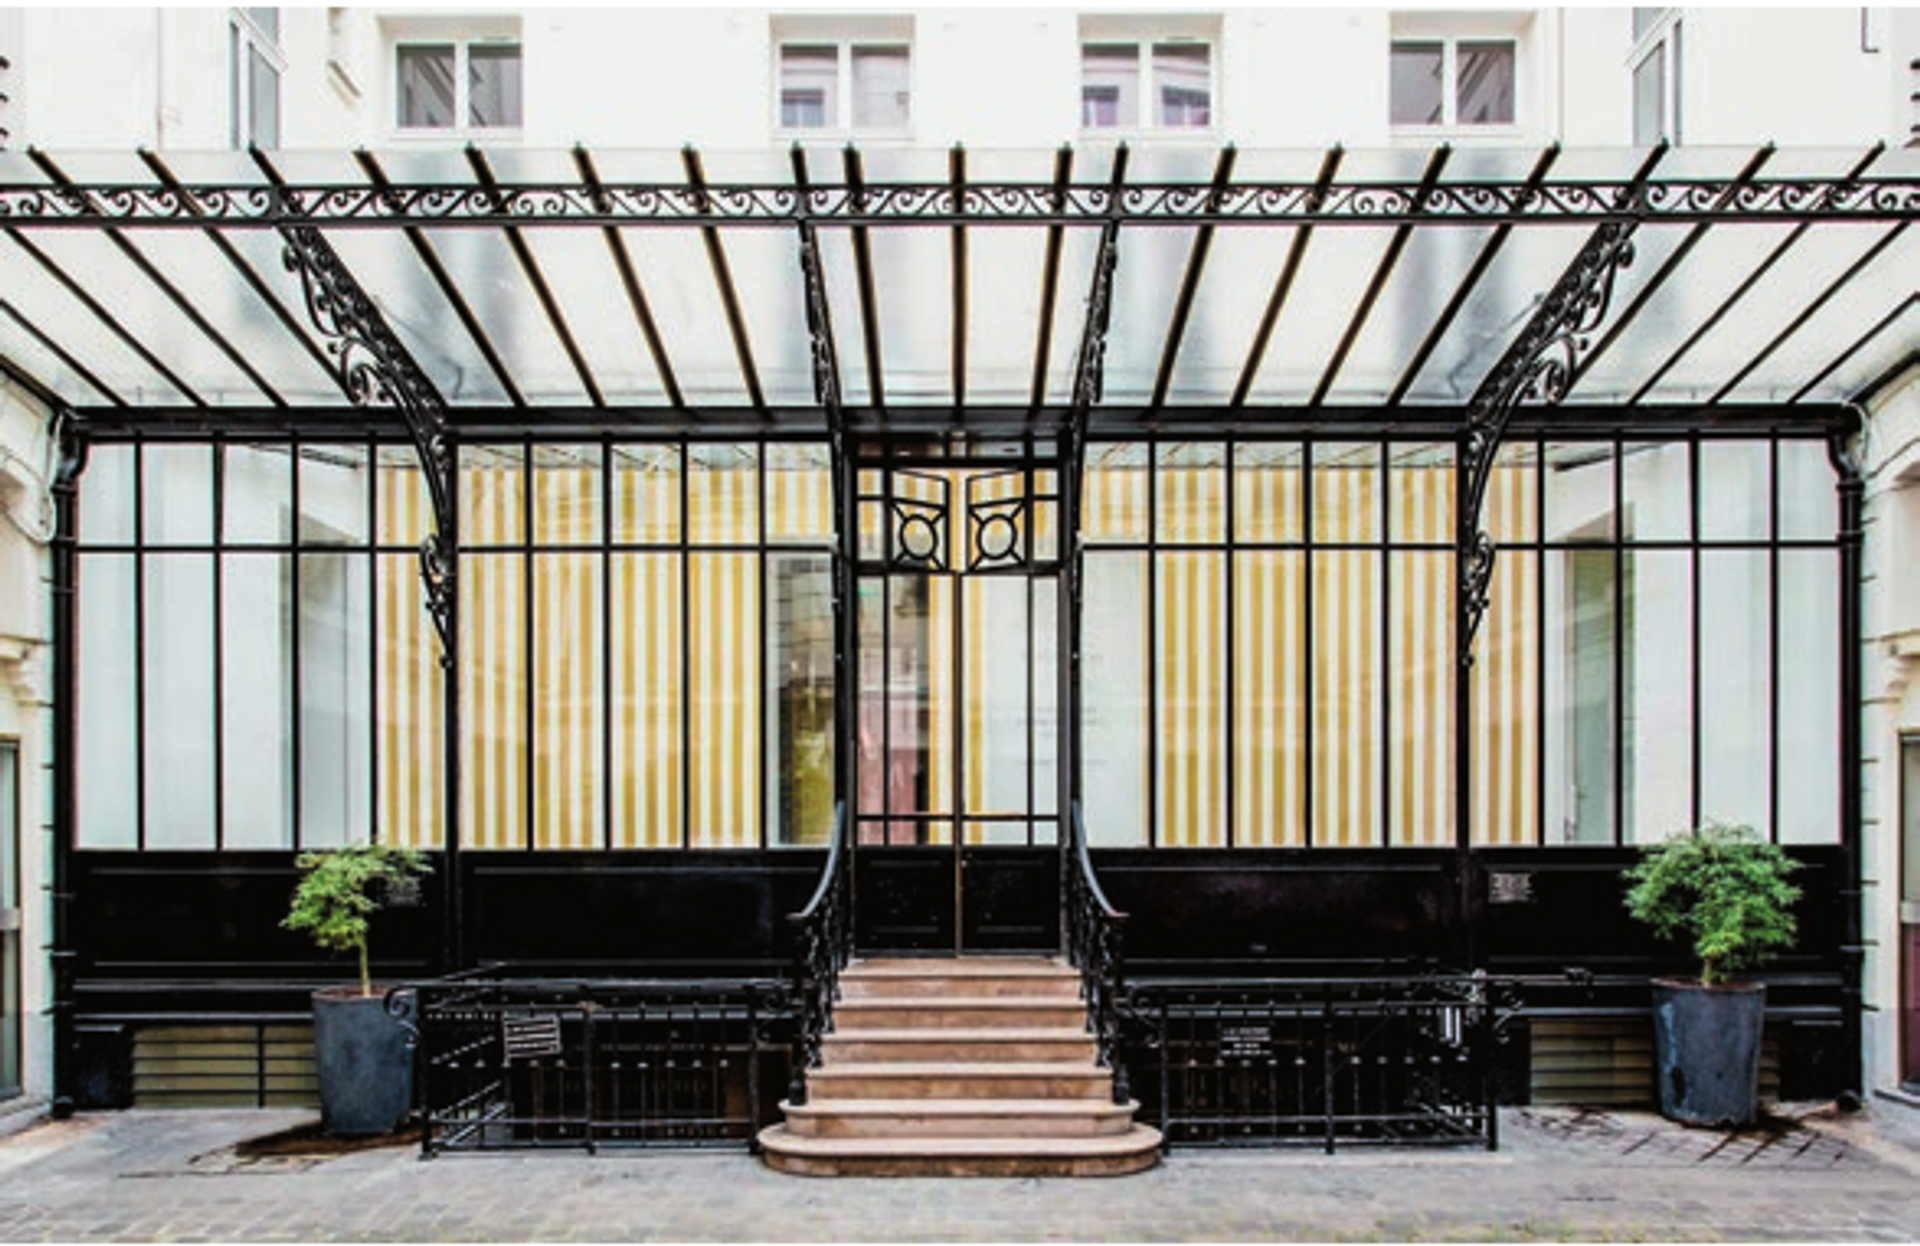 Installation d’Olivier Mosset en 2015 au 108, rue Vieille-du-Temple, adresse de David Zwirner à Paris. © Philippe Servent